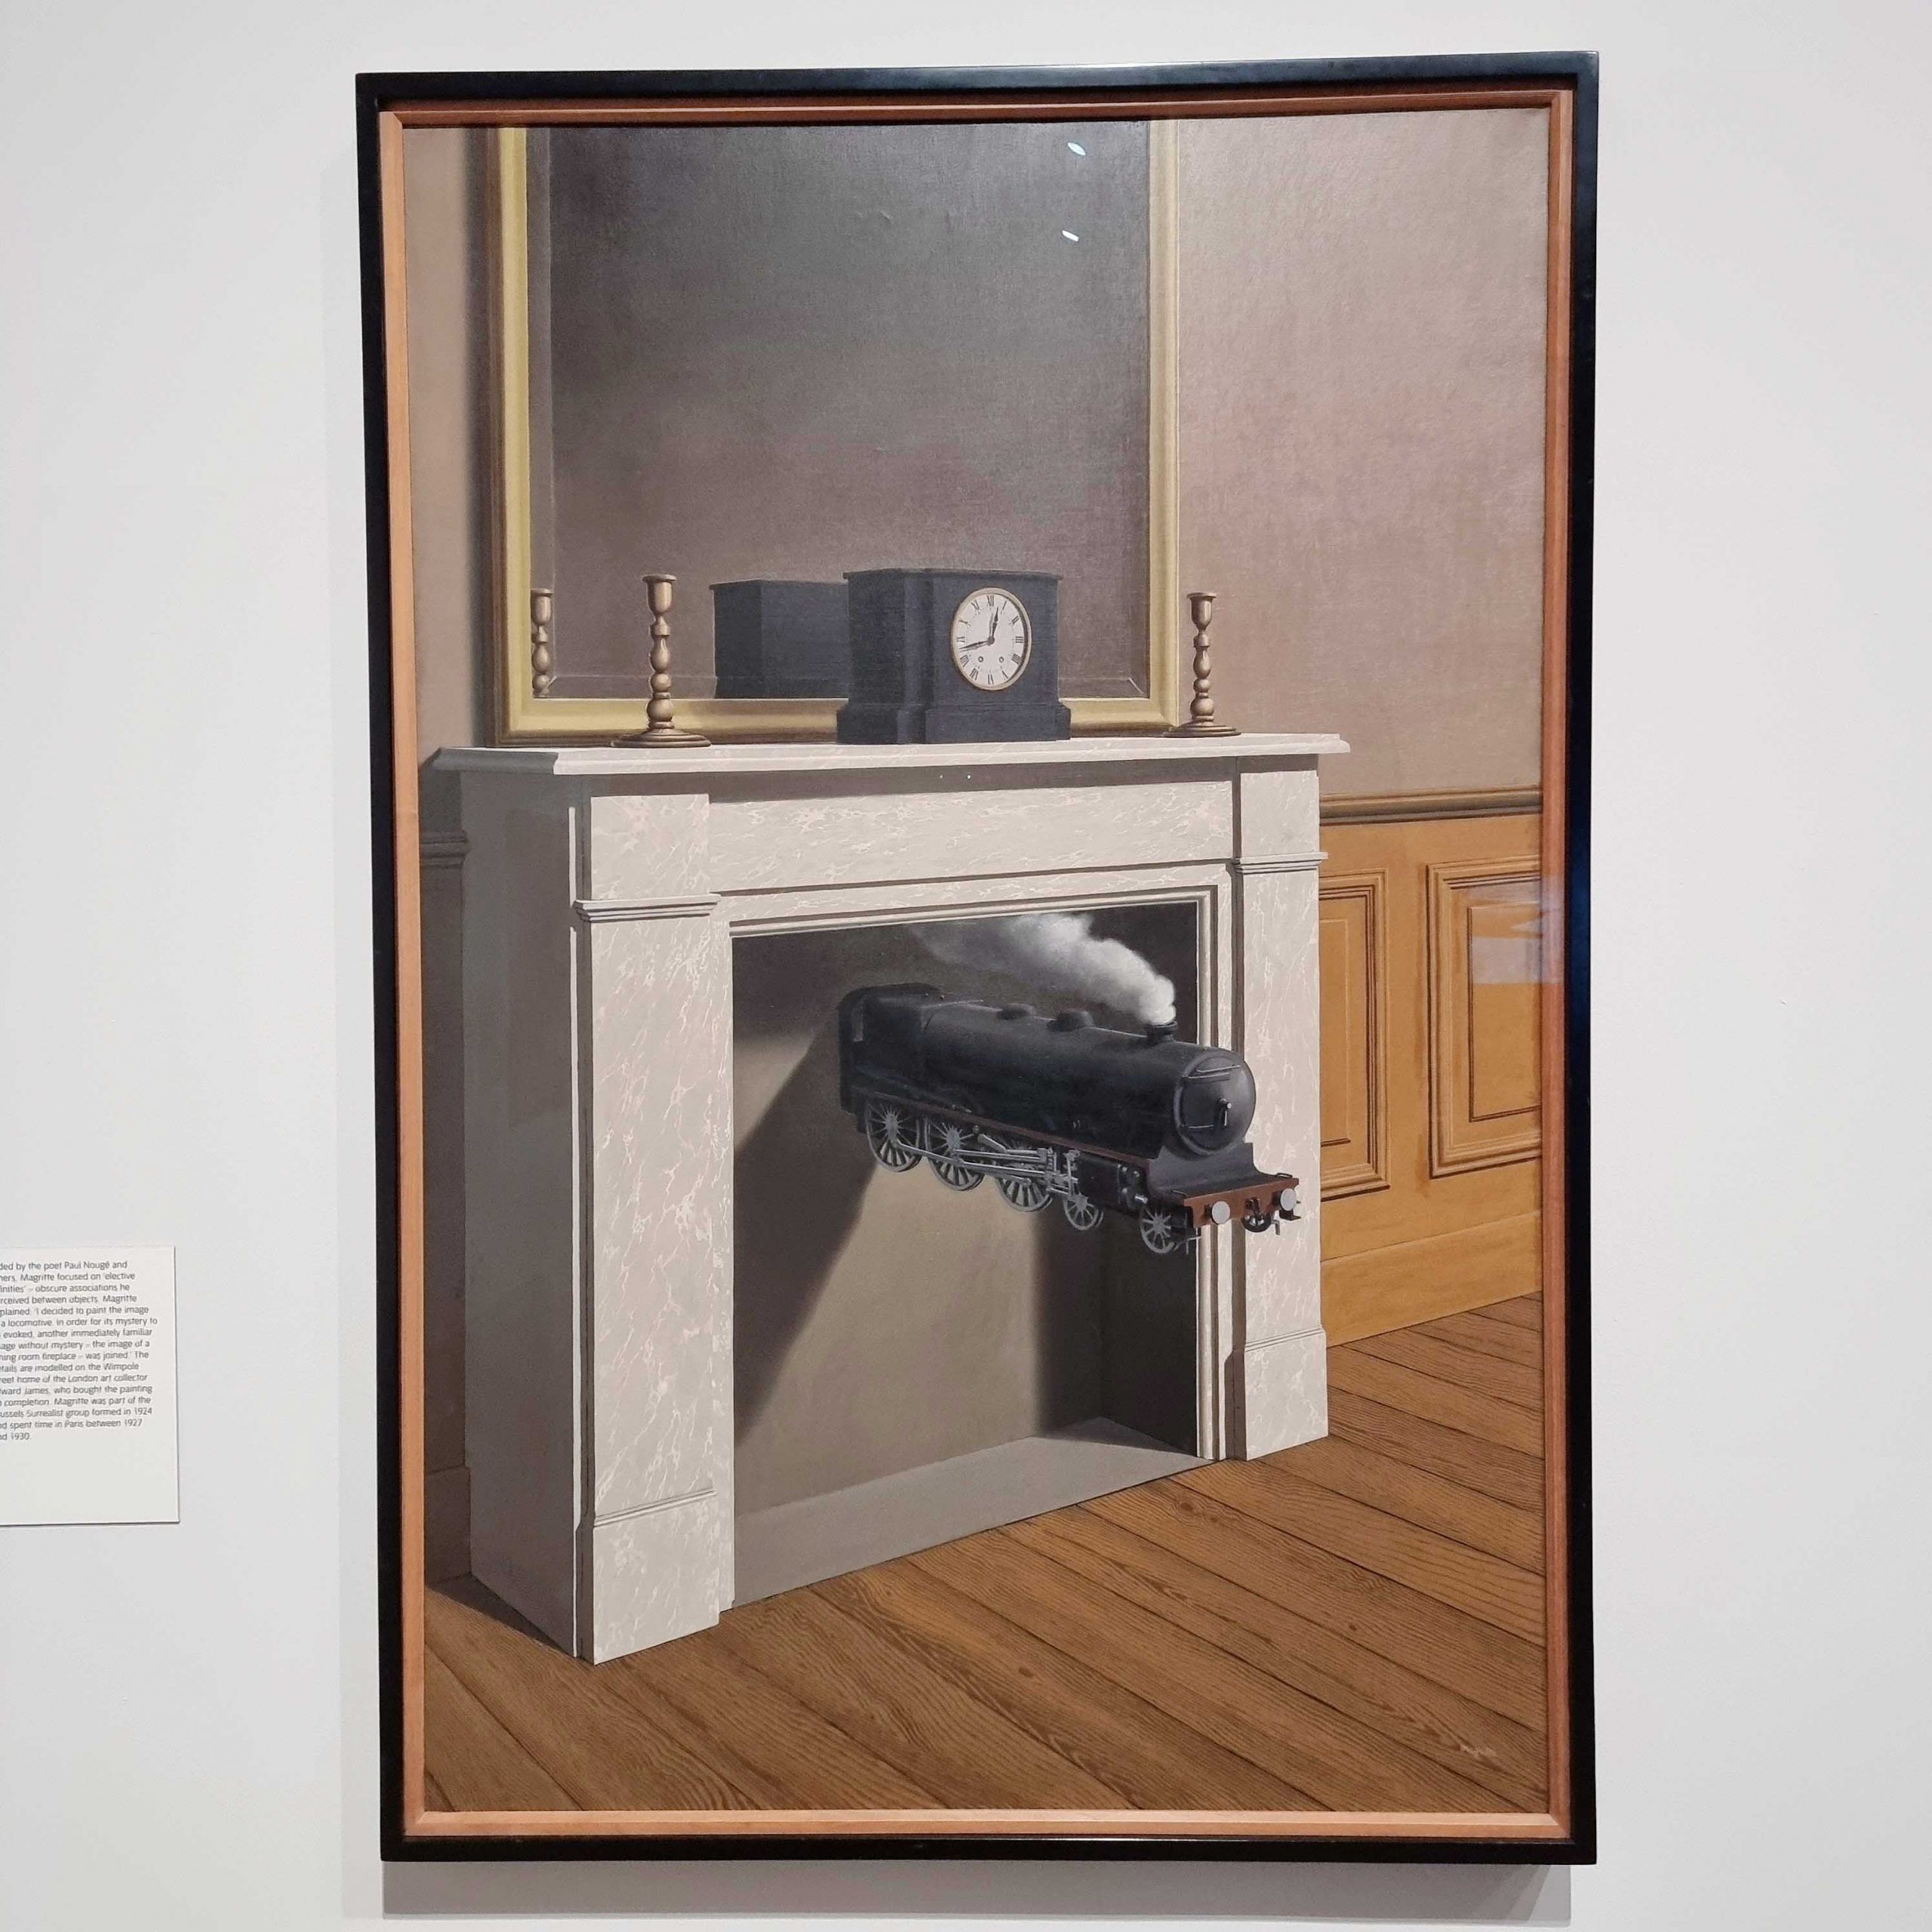 Exhibition view “Surrealism Beyond Borders” / René Magritte / La durée poignardée / 1938 / © The Art Institute of Chicago